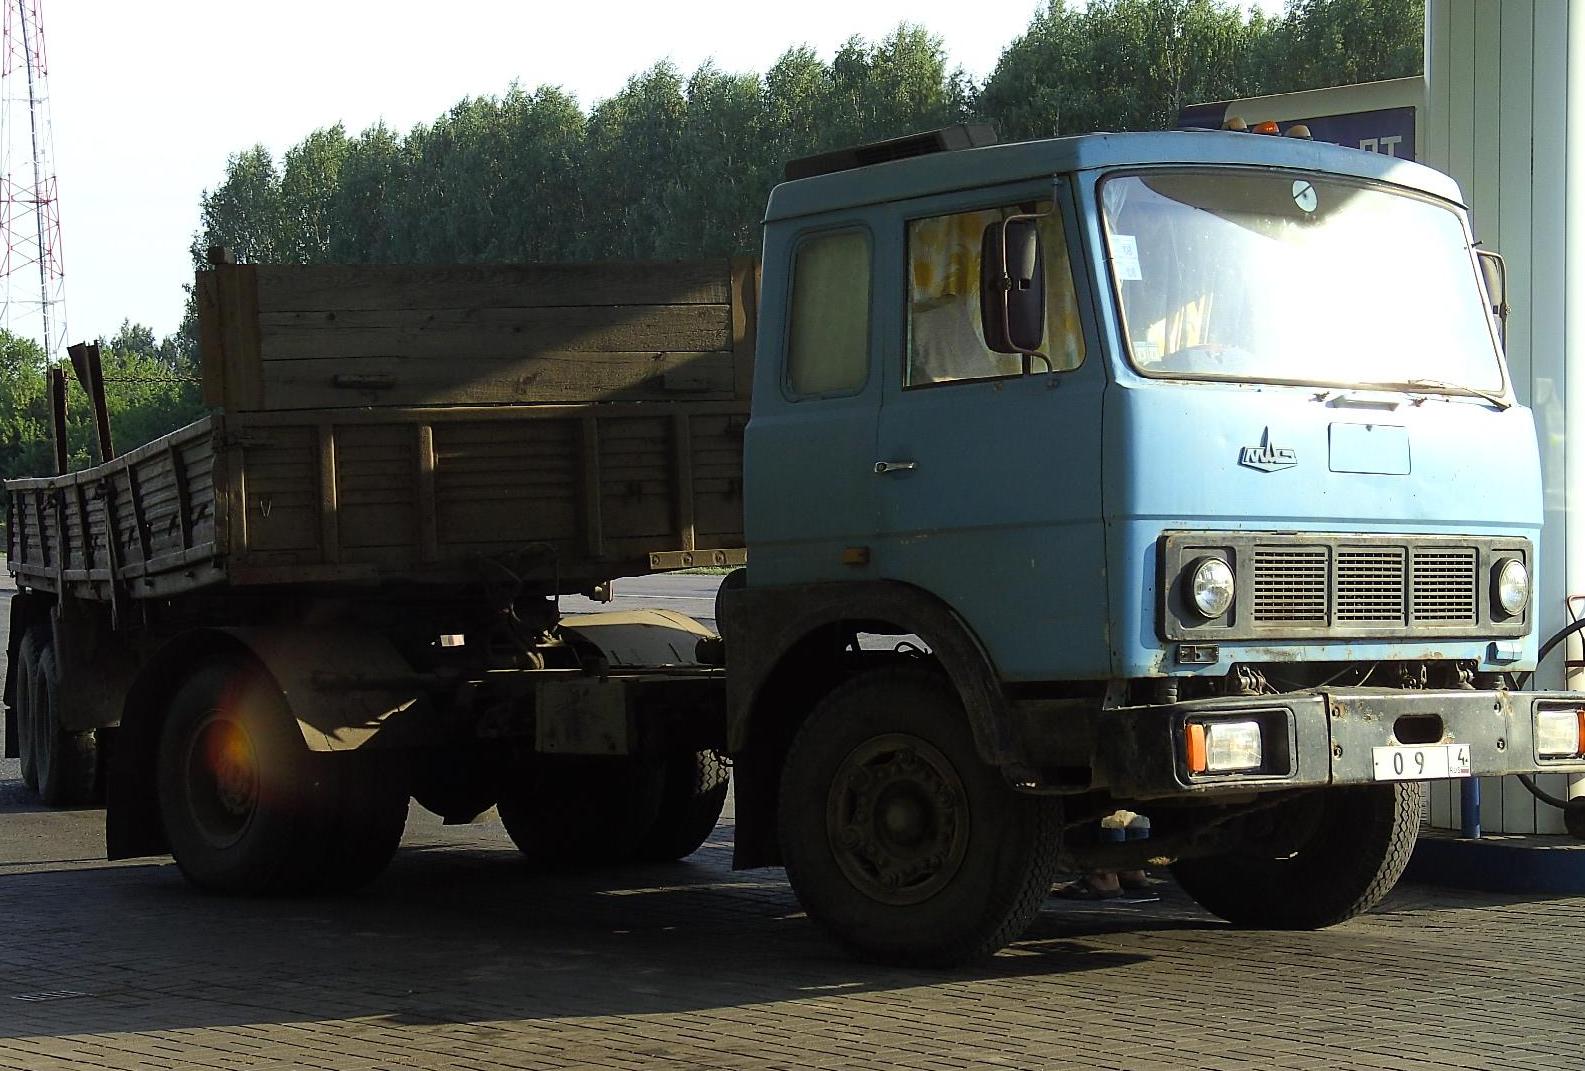 File:MAZ truck in russia.JPG - Wikimedia Commons